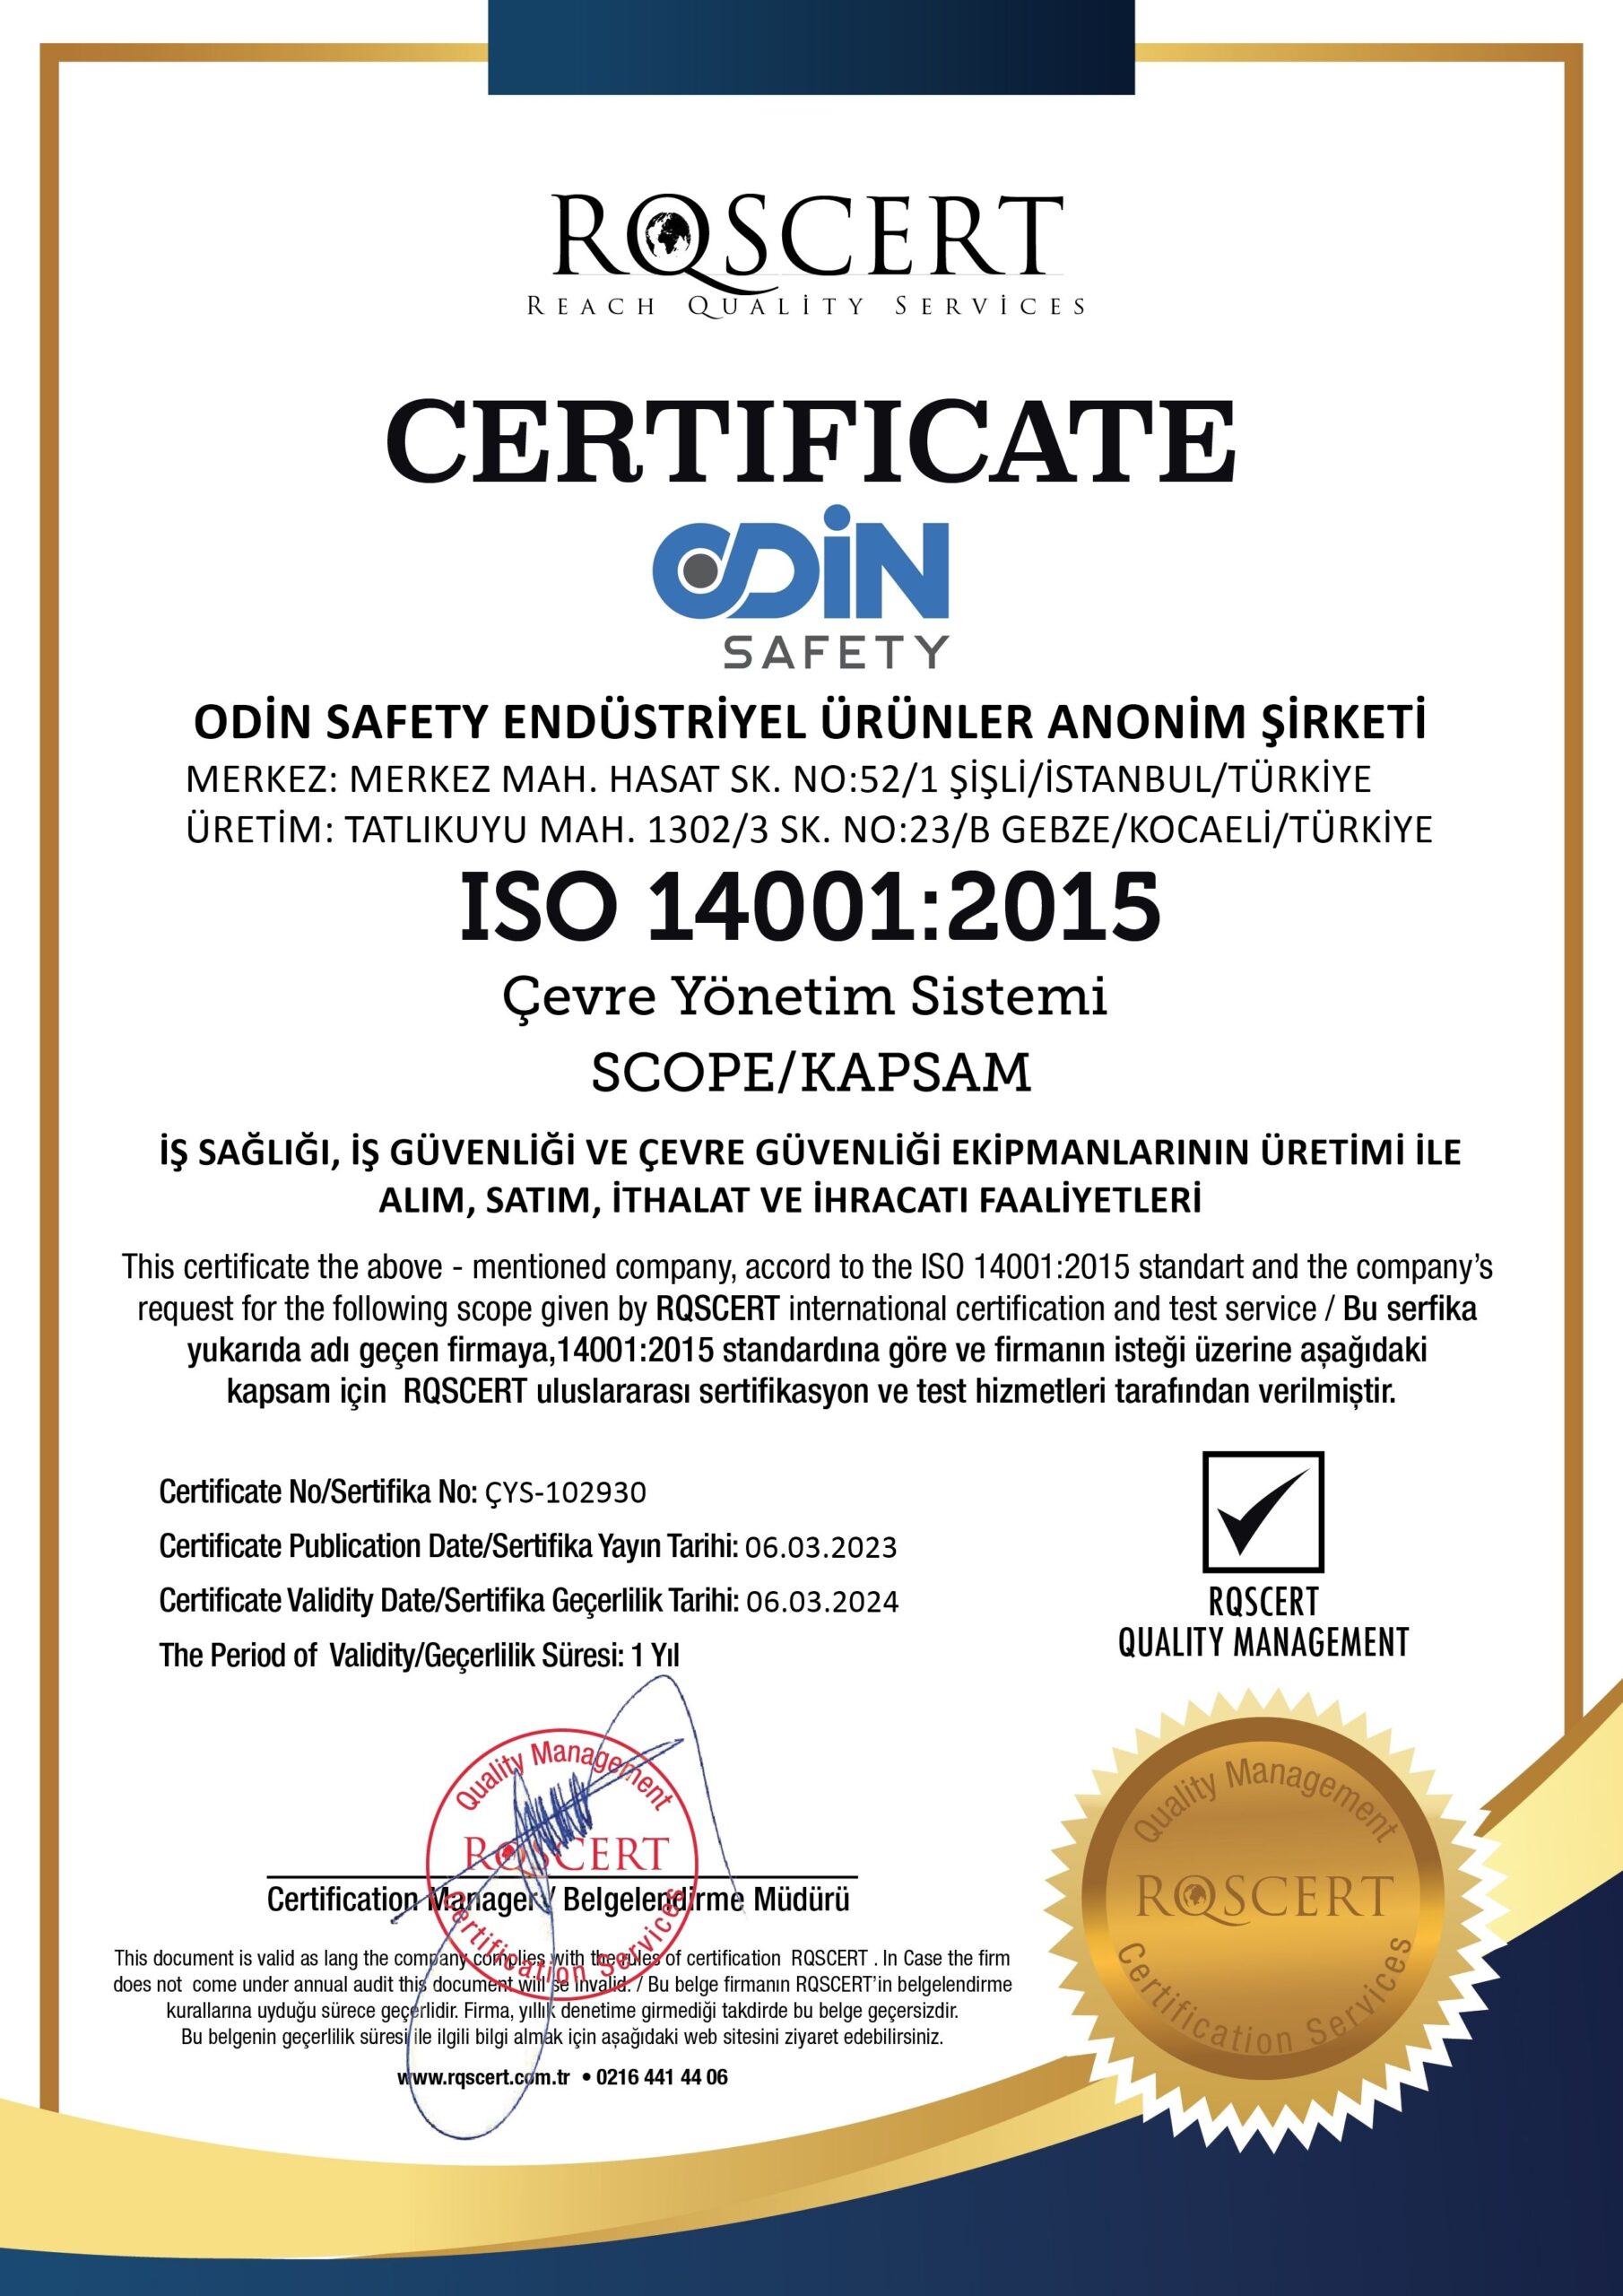 ODİN SAFETY ISO 14001